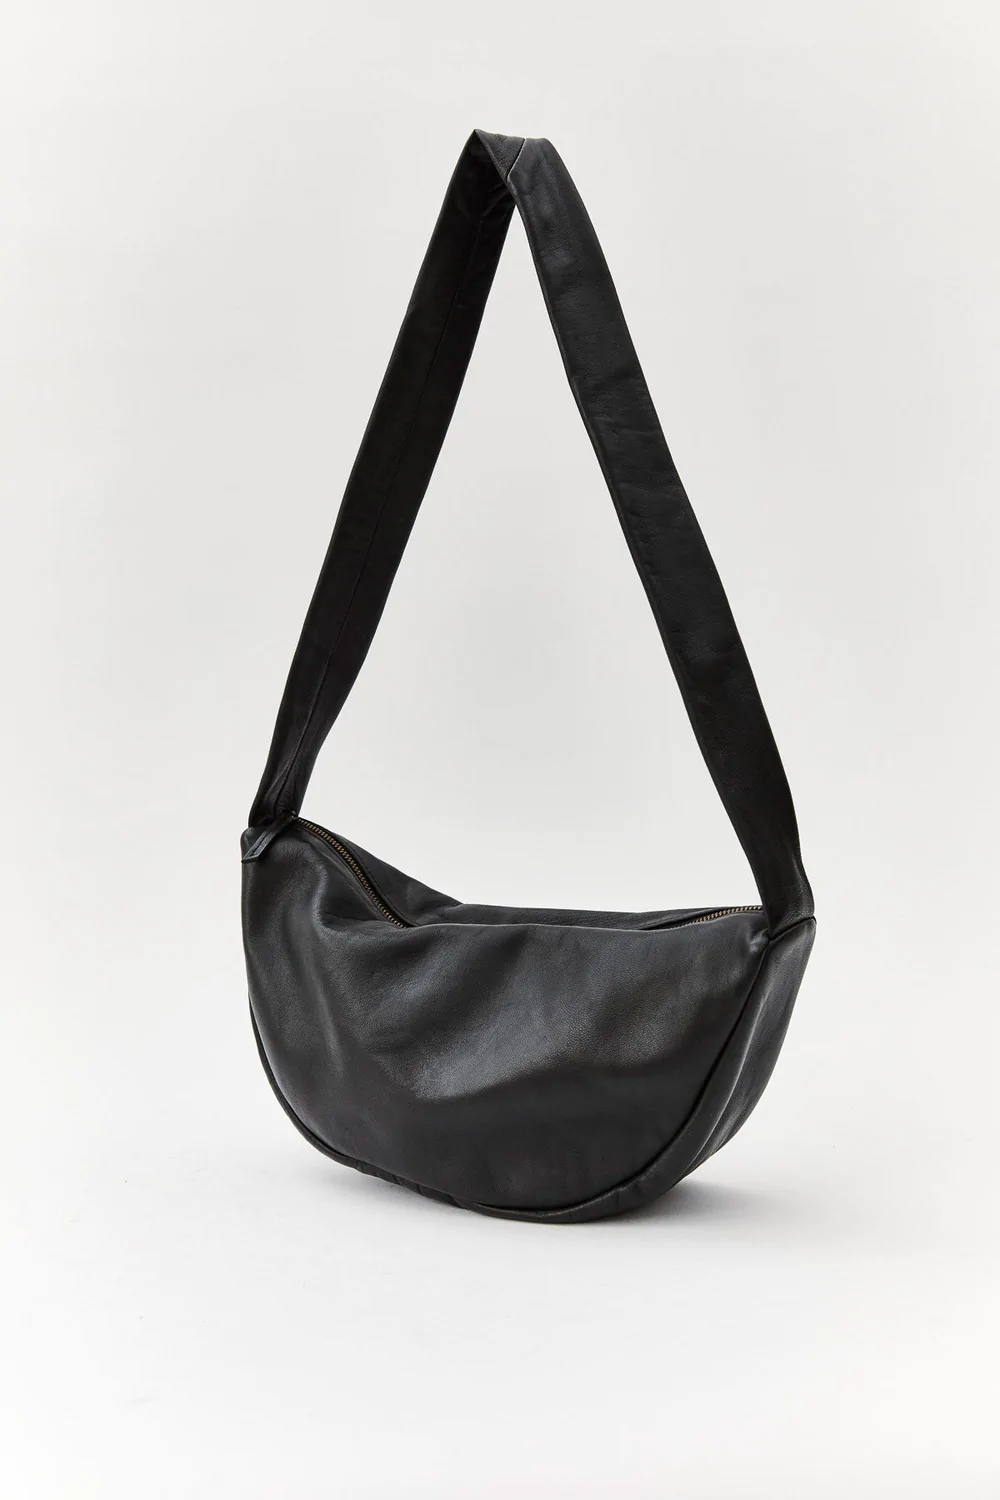 Product Image for Soft Crescent Bag, Black